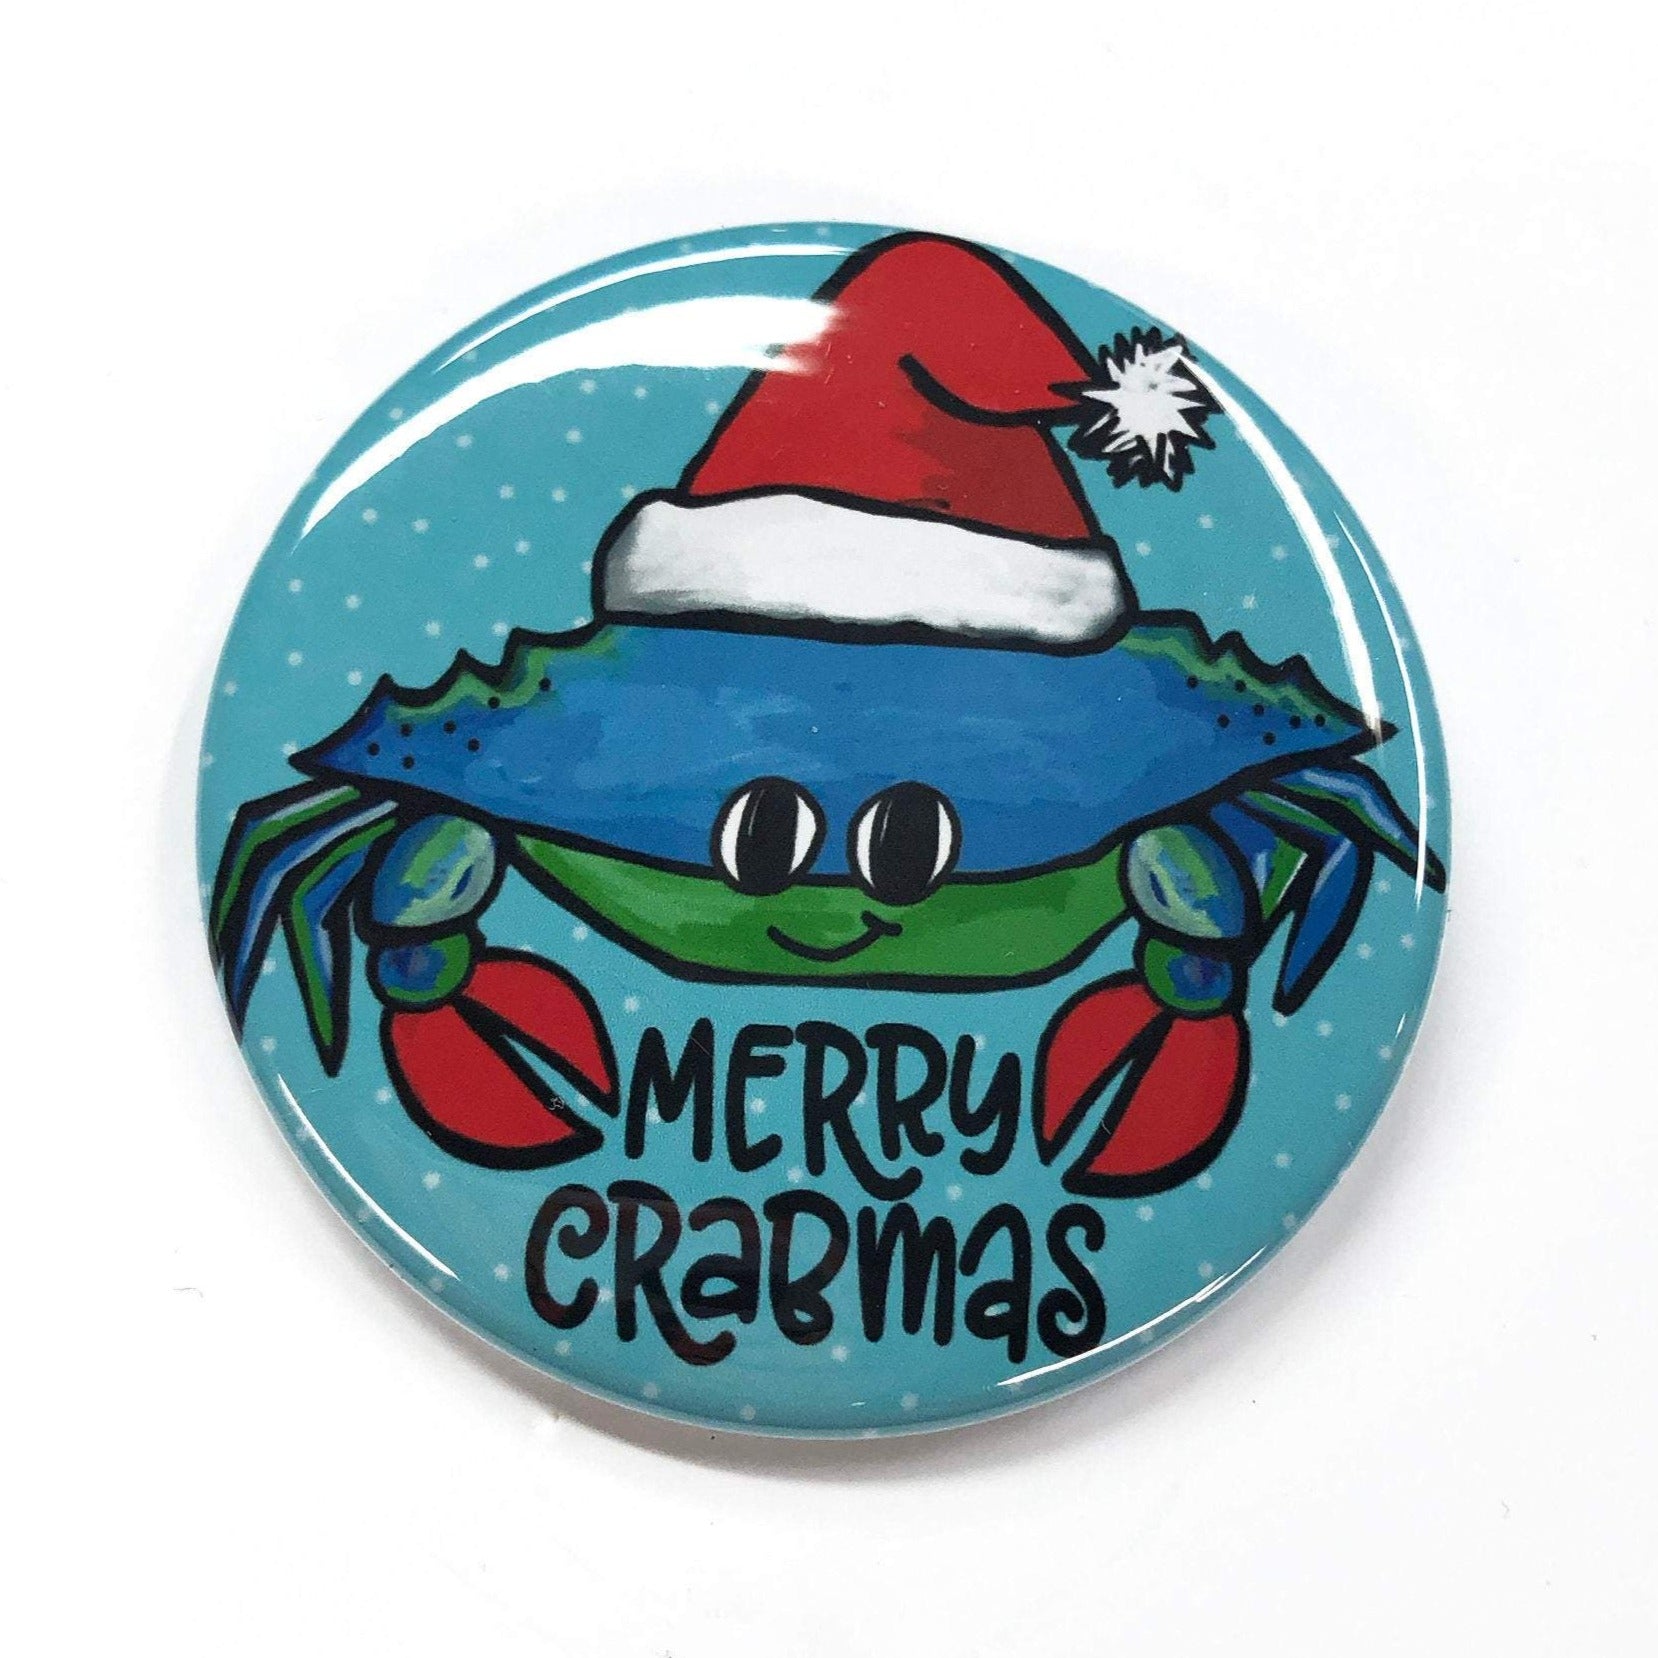 Merry Crabmas Pin Back Button, Magnet, or Pocket Mirror